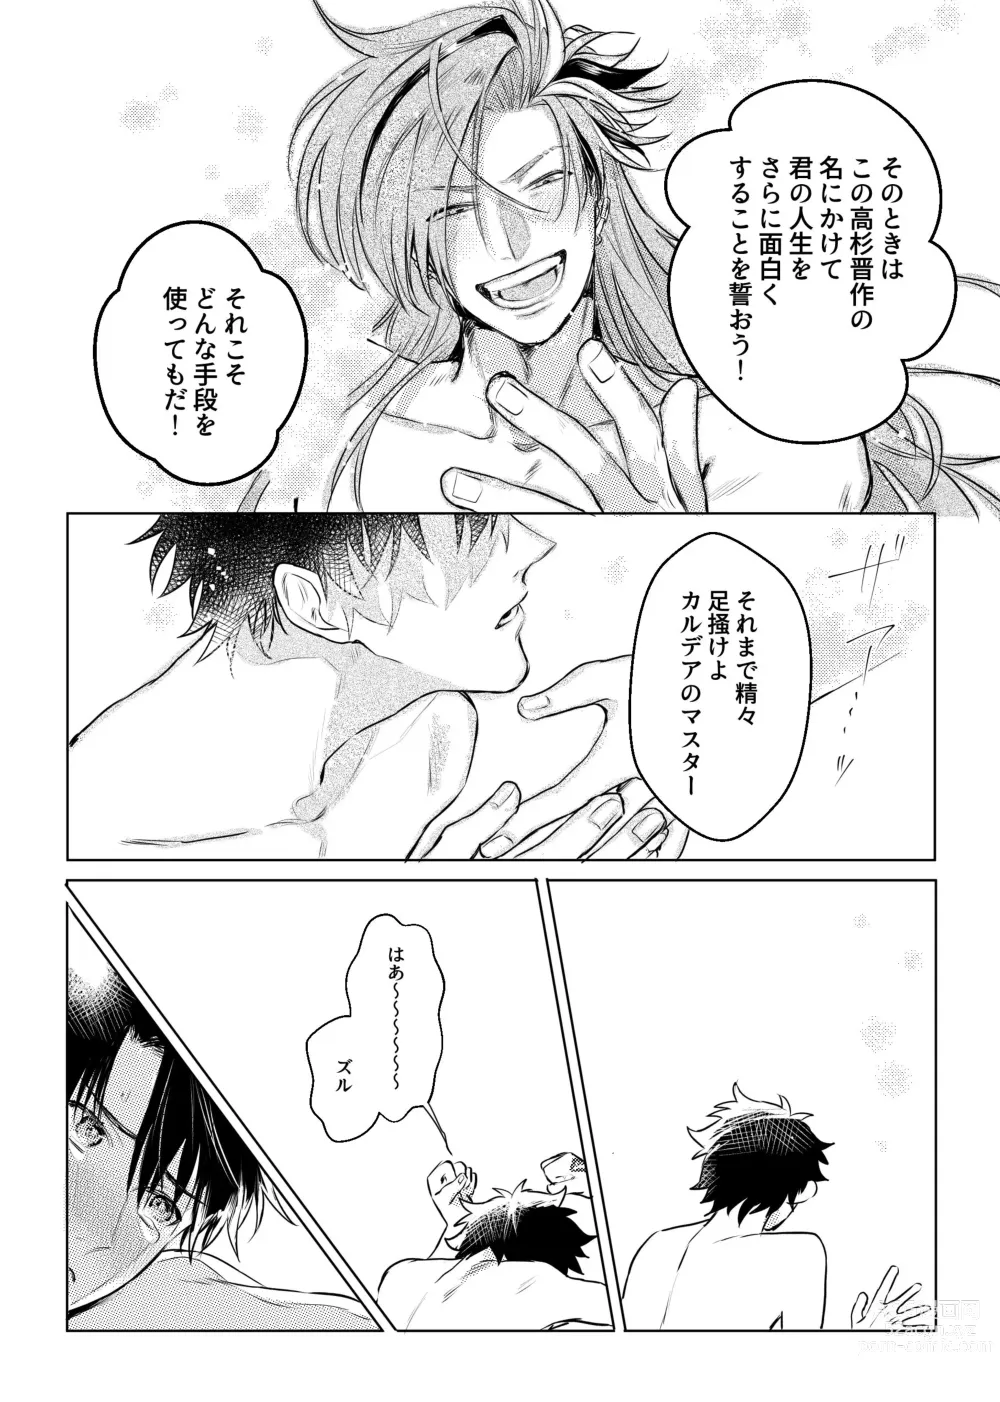 Page 17 of doujinshi Konna Hazude wa!